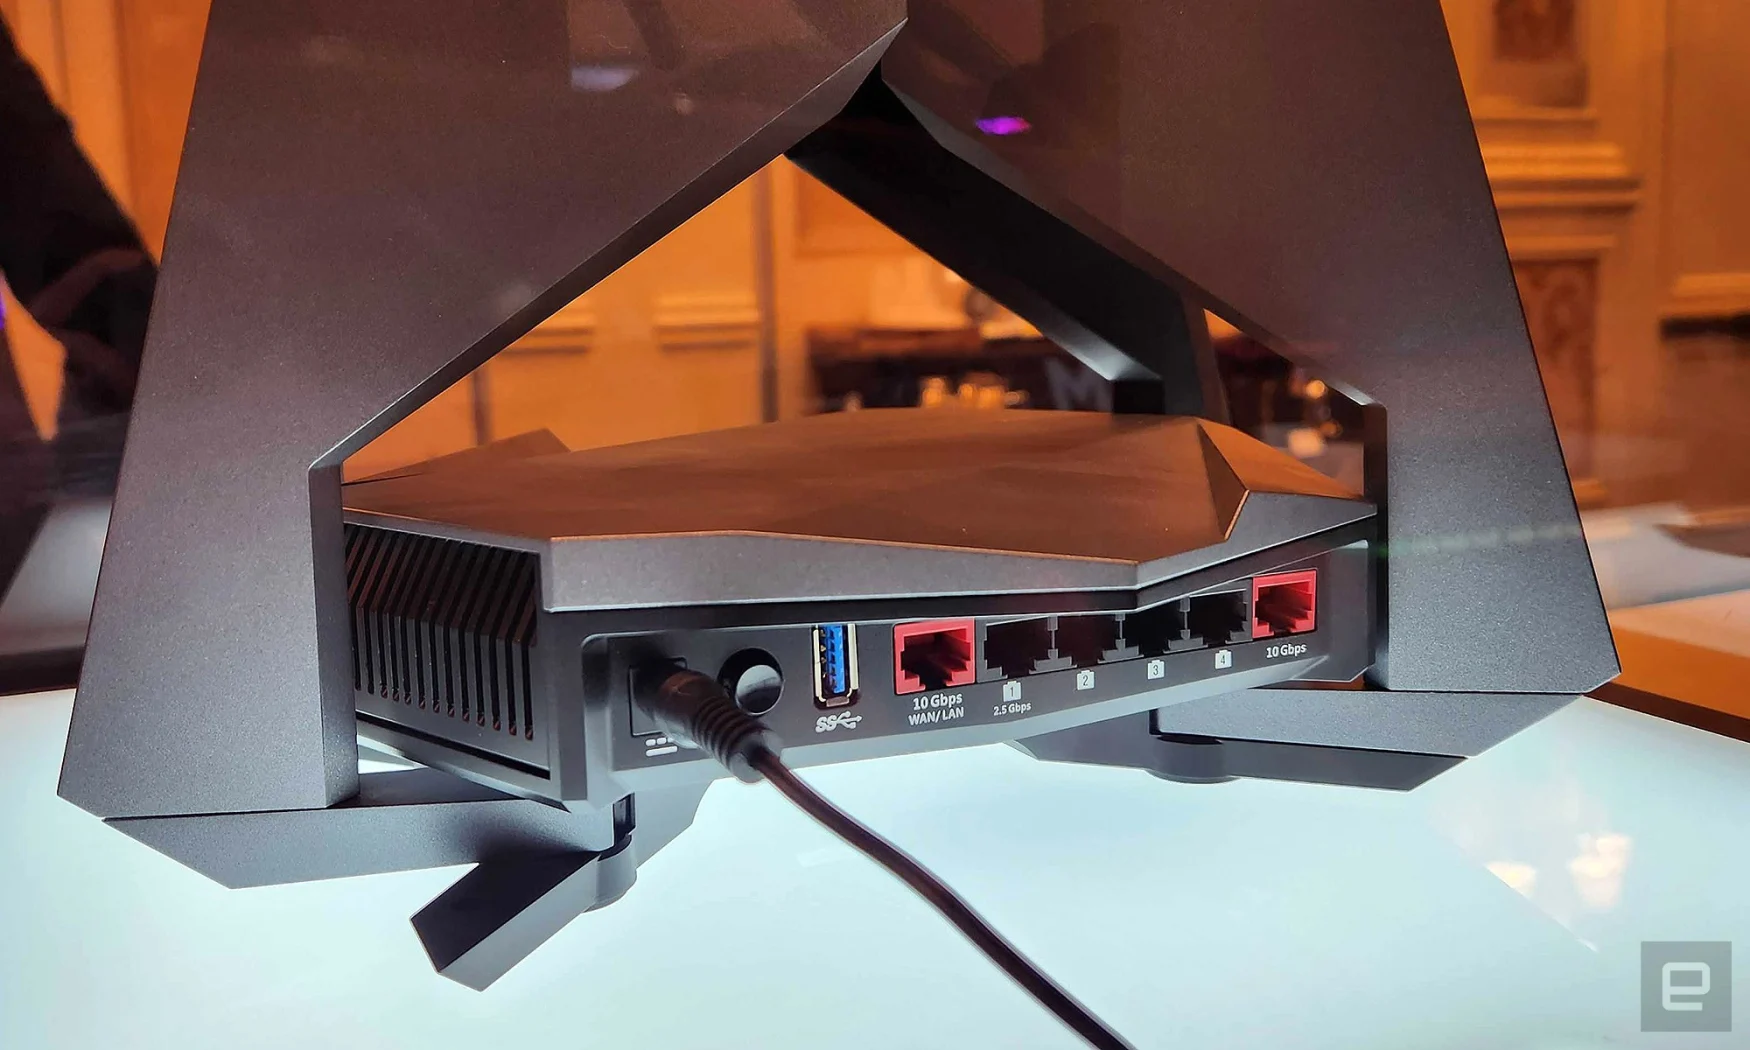 Pour les personnes qui se soucient toujours des connexions Internet filaires, le RadiX BE22000 Turbo comprend également deux ports Ethernet 10 gigabits ainsi que quatre prises 2,5 gigabits. 